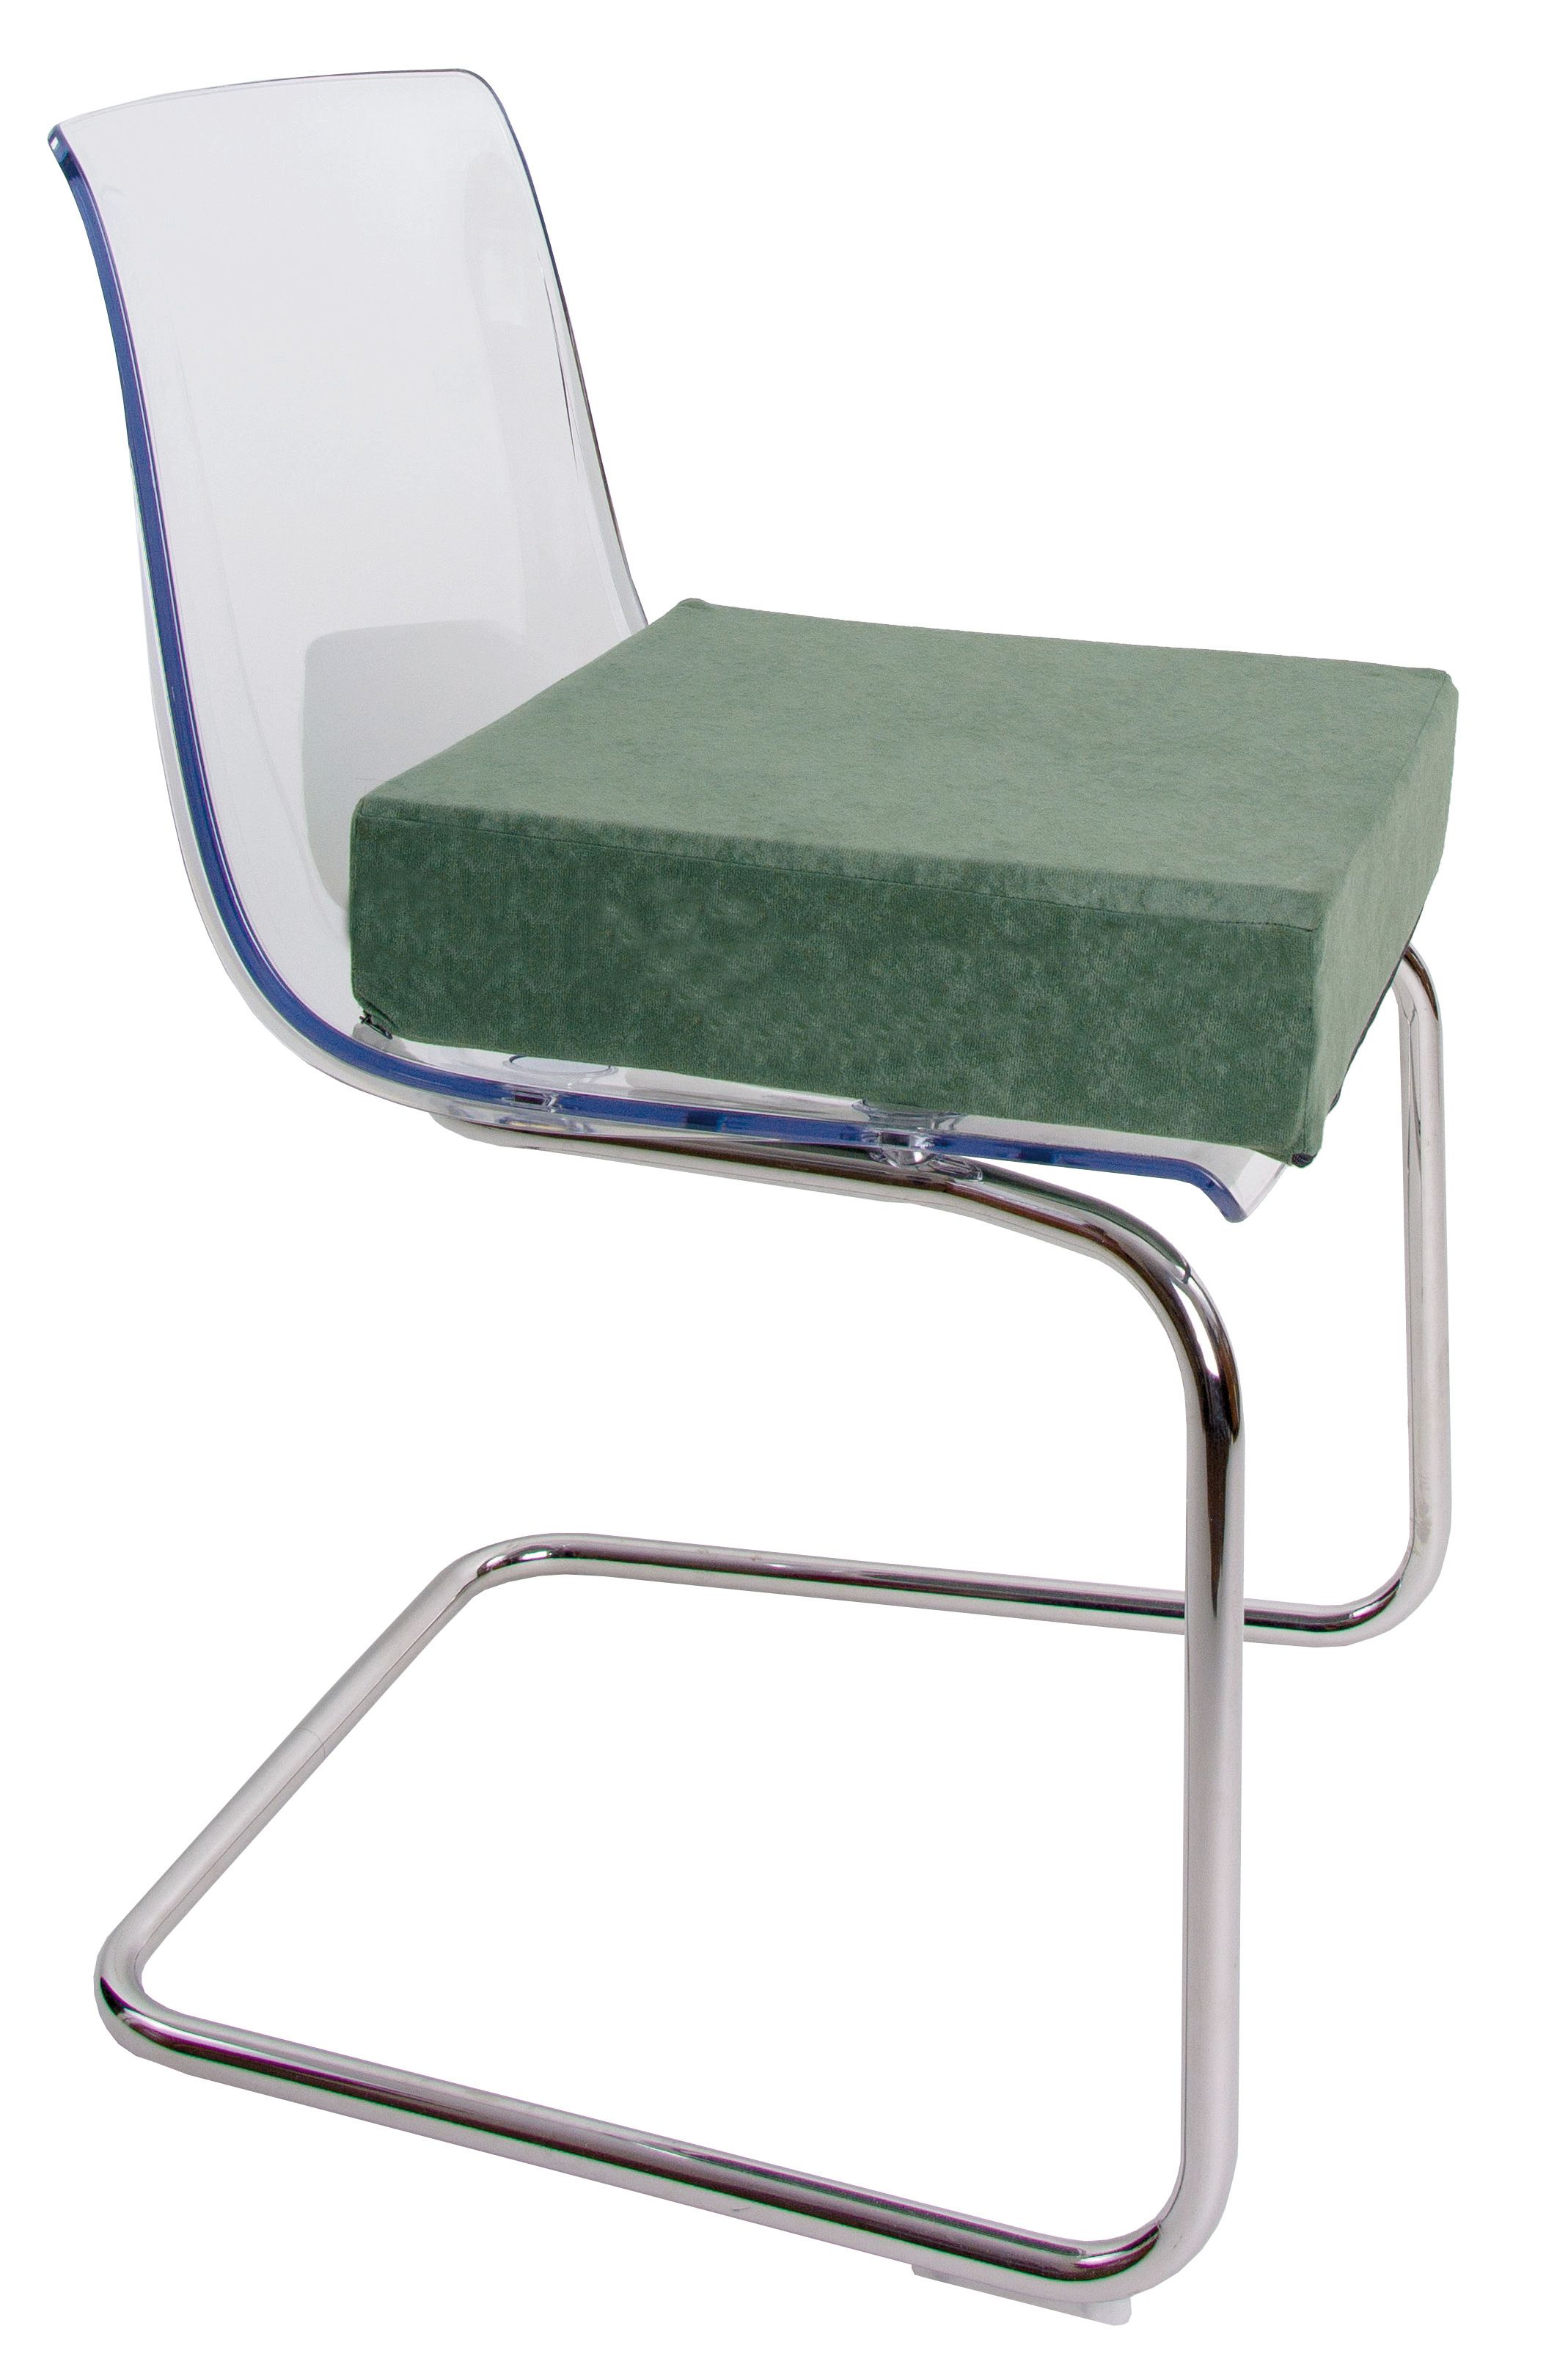 Stuhlerhöhung, orthopädische Sitzerhöhung, Sitzkissen, Bodenkissen, 40 x 40 x 10cm